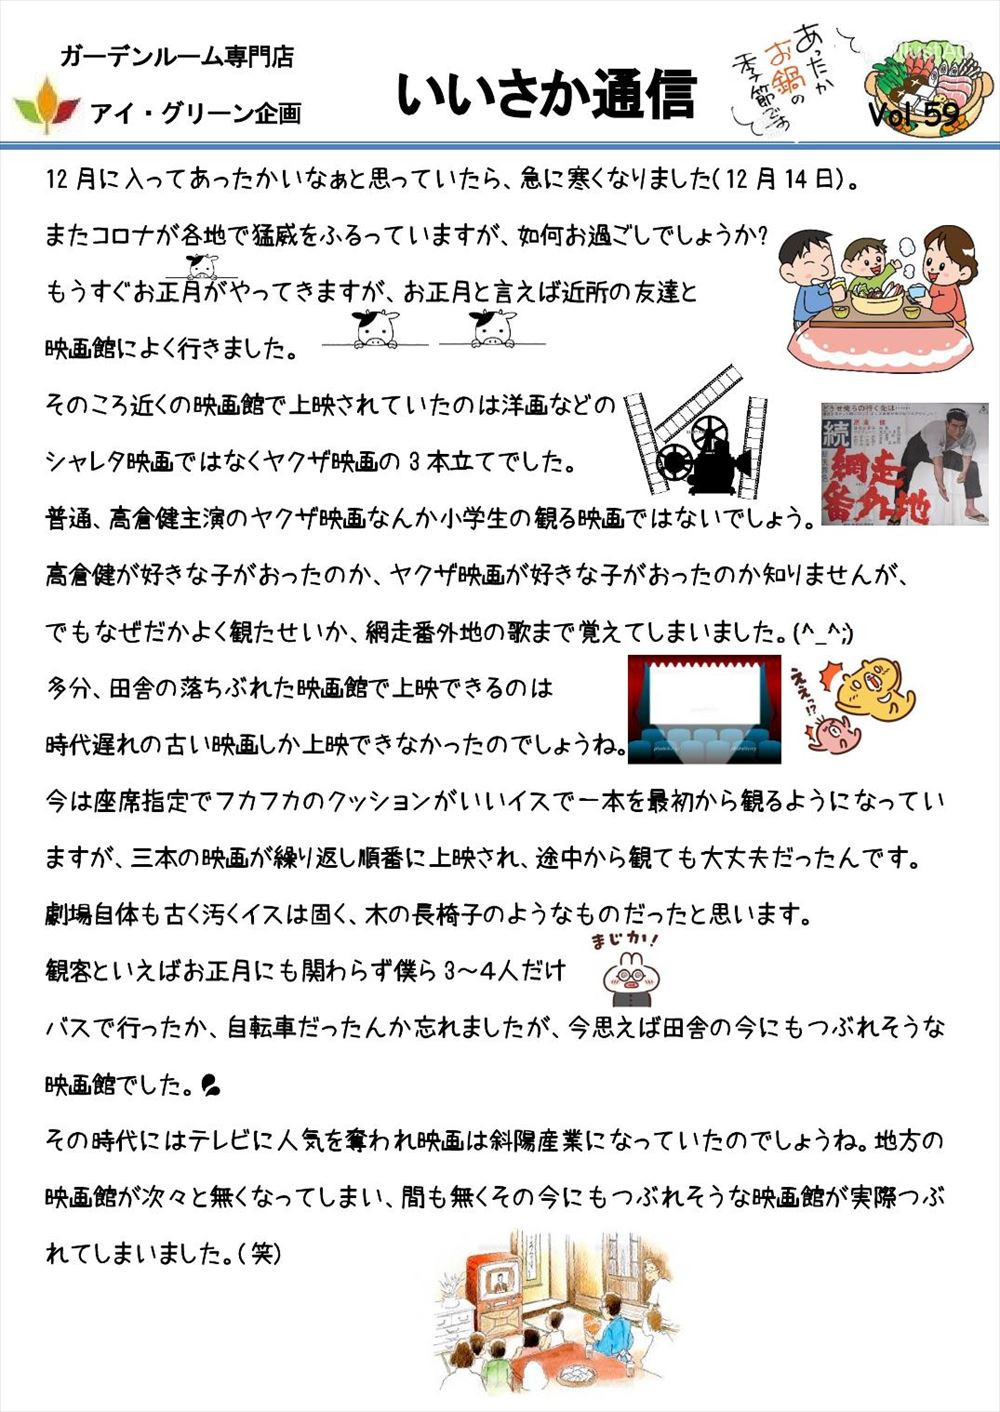 いいさか通信vol 59 和泉市にて注目を浴びているリフォーム業者がブログを日夜更新中です